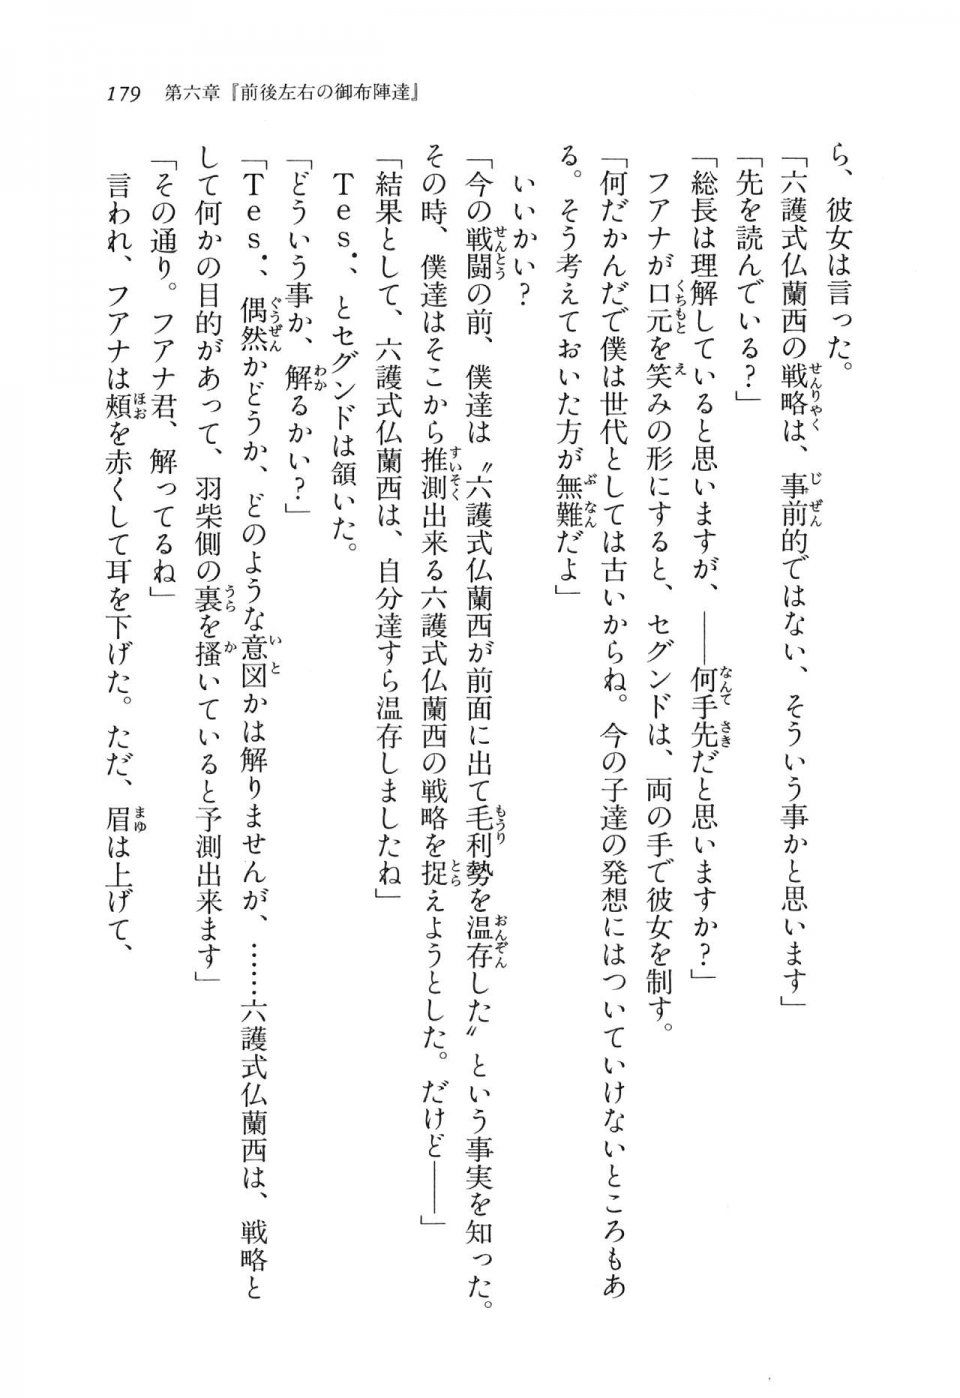 Kyoukai Senjou no Horizon LN Vol 11(5A) - Photo #179